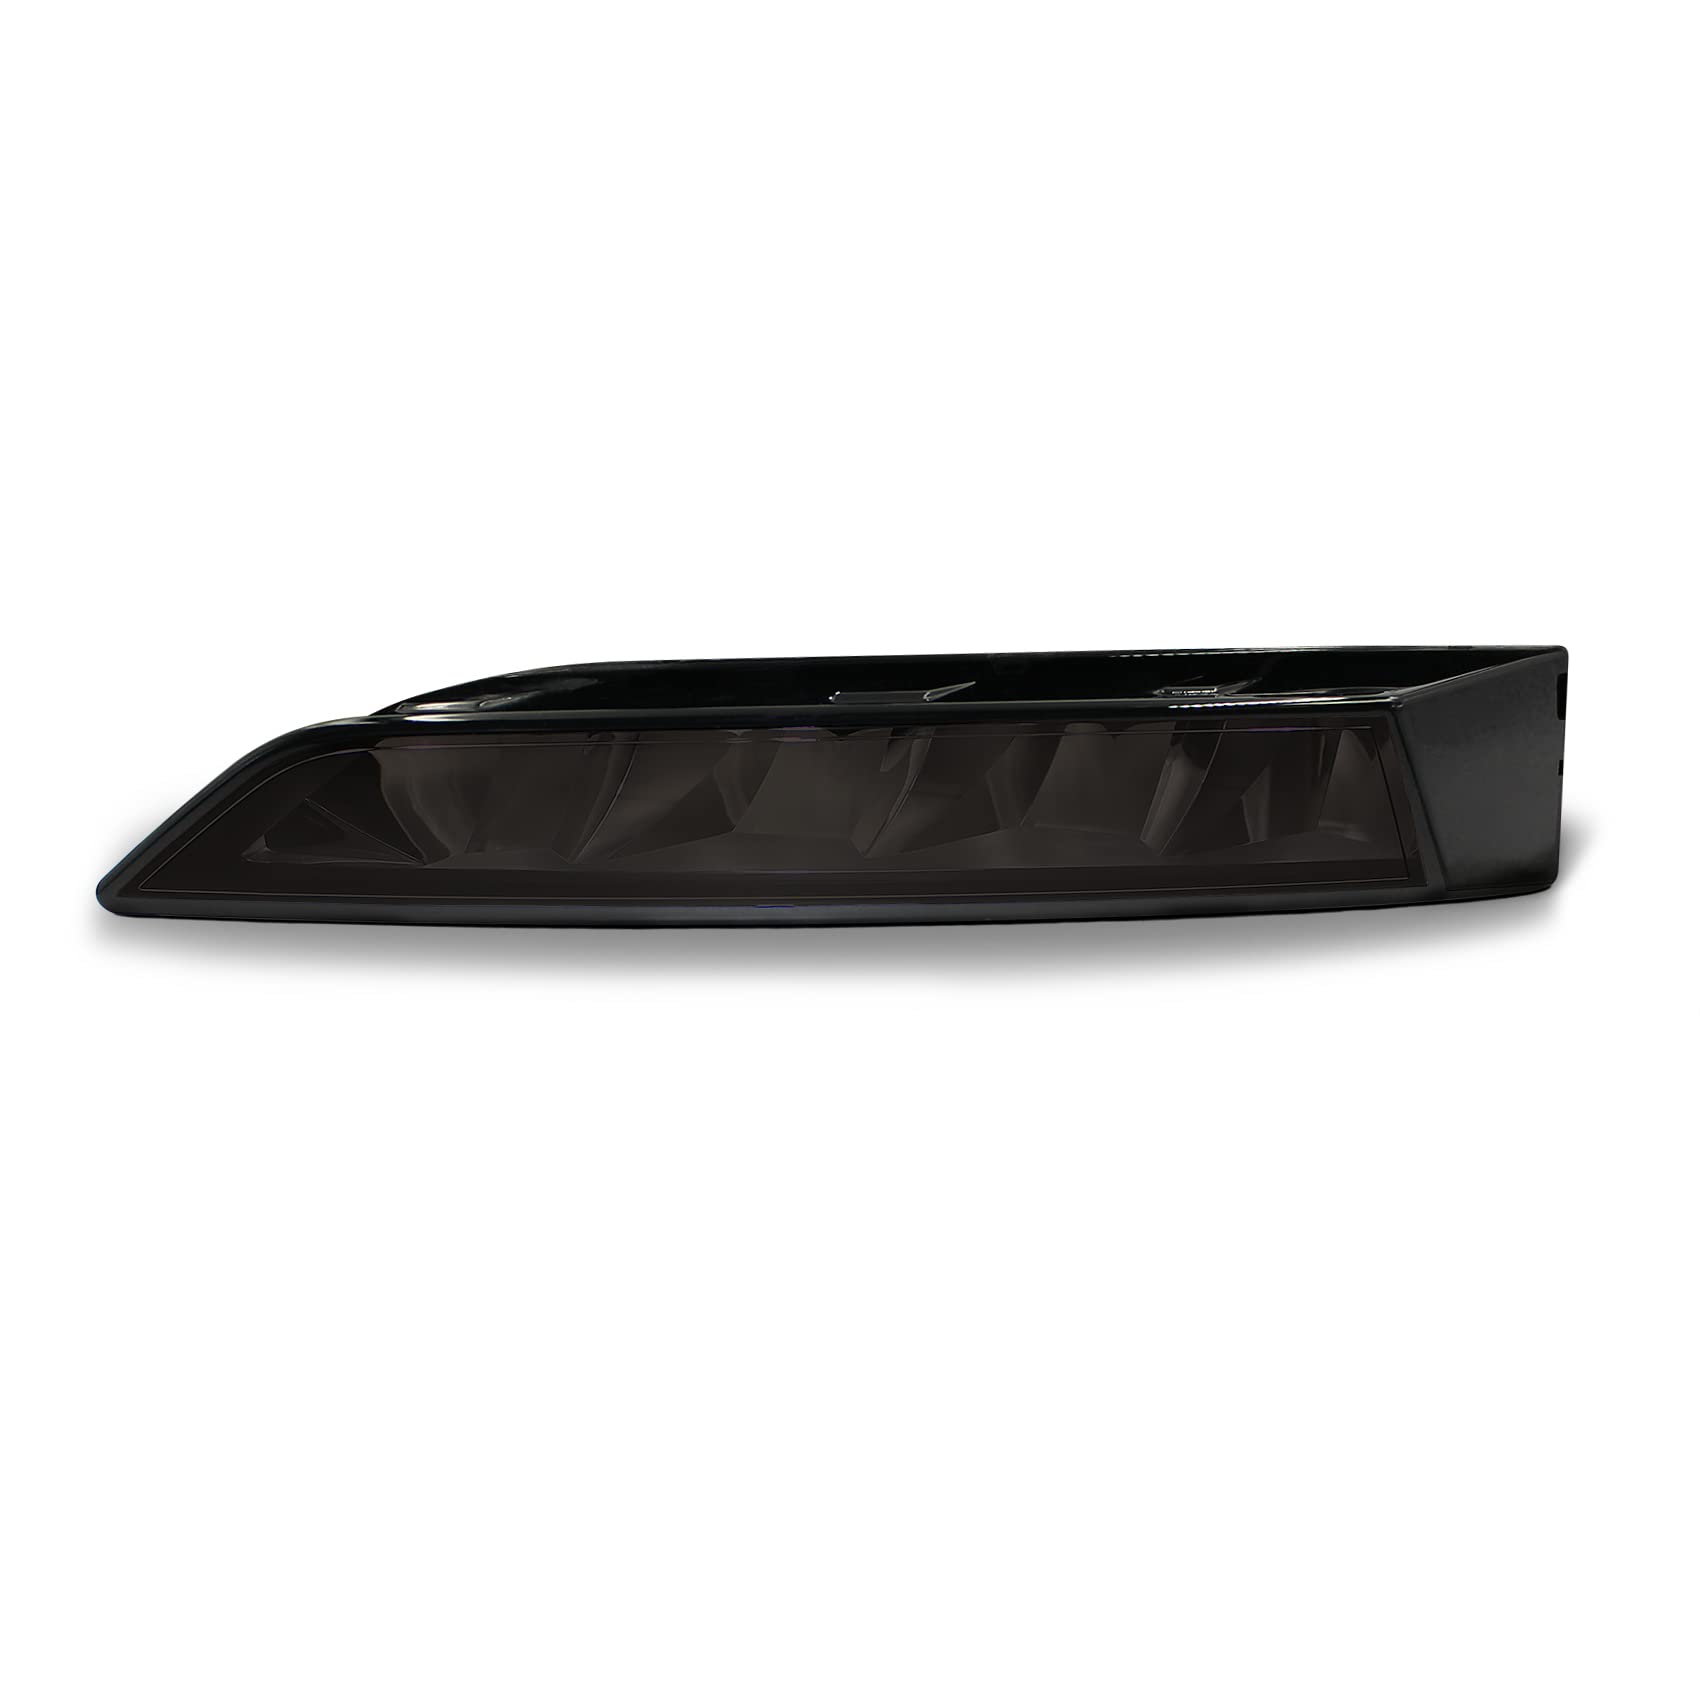 Folien Set Nebelscheinwerfer Tagfahrleuchten Tönungsfolie Aufkleber Passgenau Zugeschnitten Auto Kfz Zubehör Selbstklebend C072 (Dark Grey) von Finest Folia